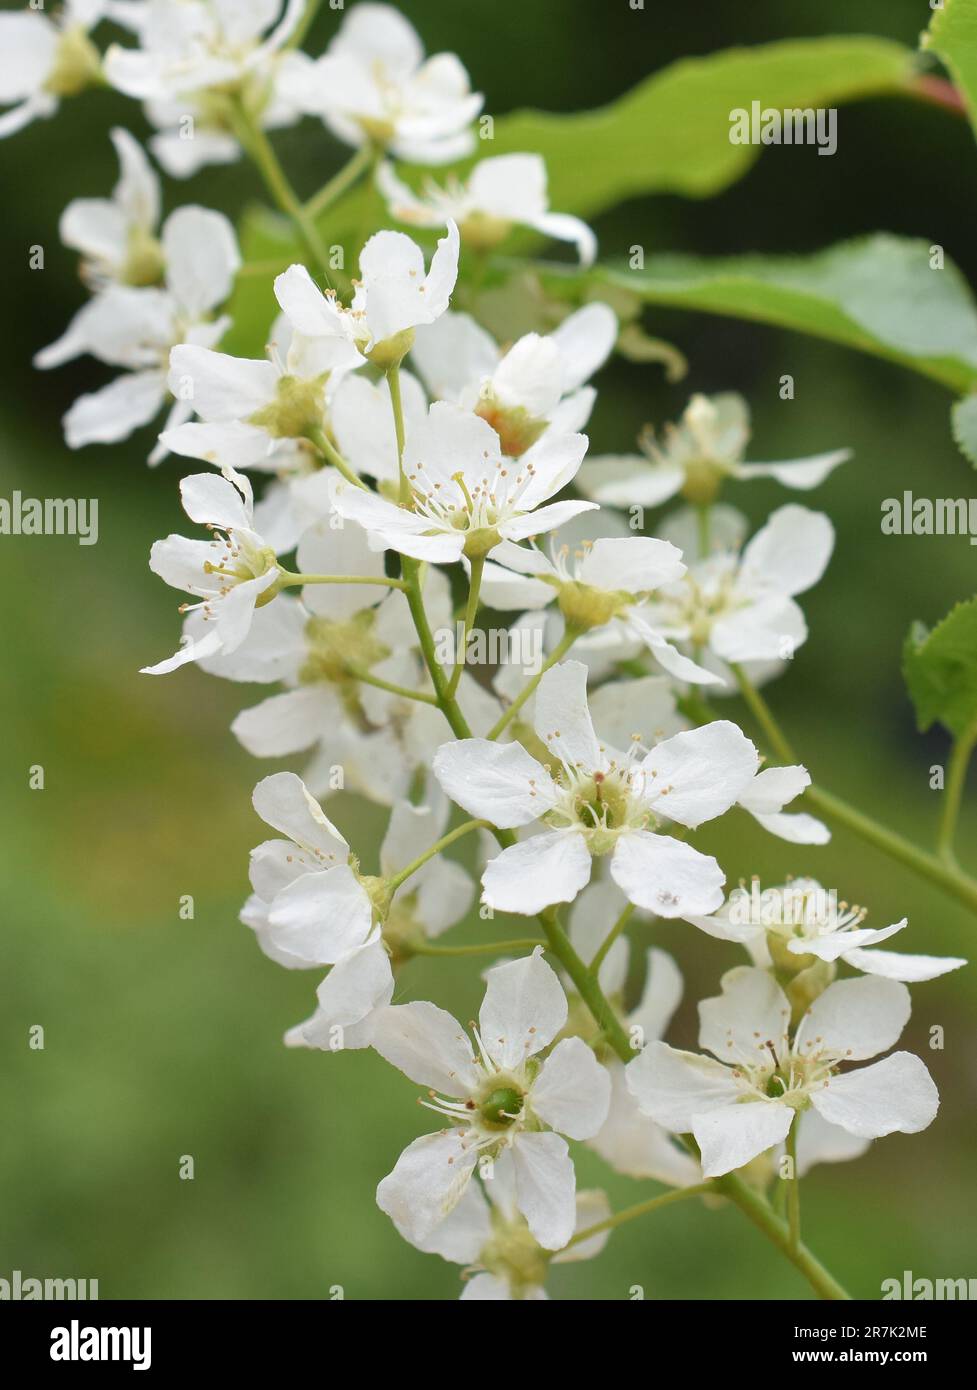 Nahaufnahme des Vogelkirschbaums Prunus padus blühende weiße Blumen im Frühling Stockfoto